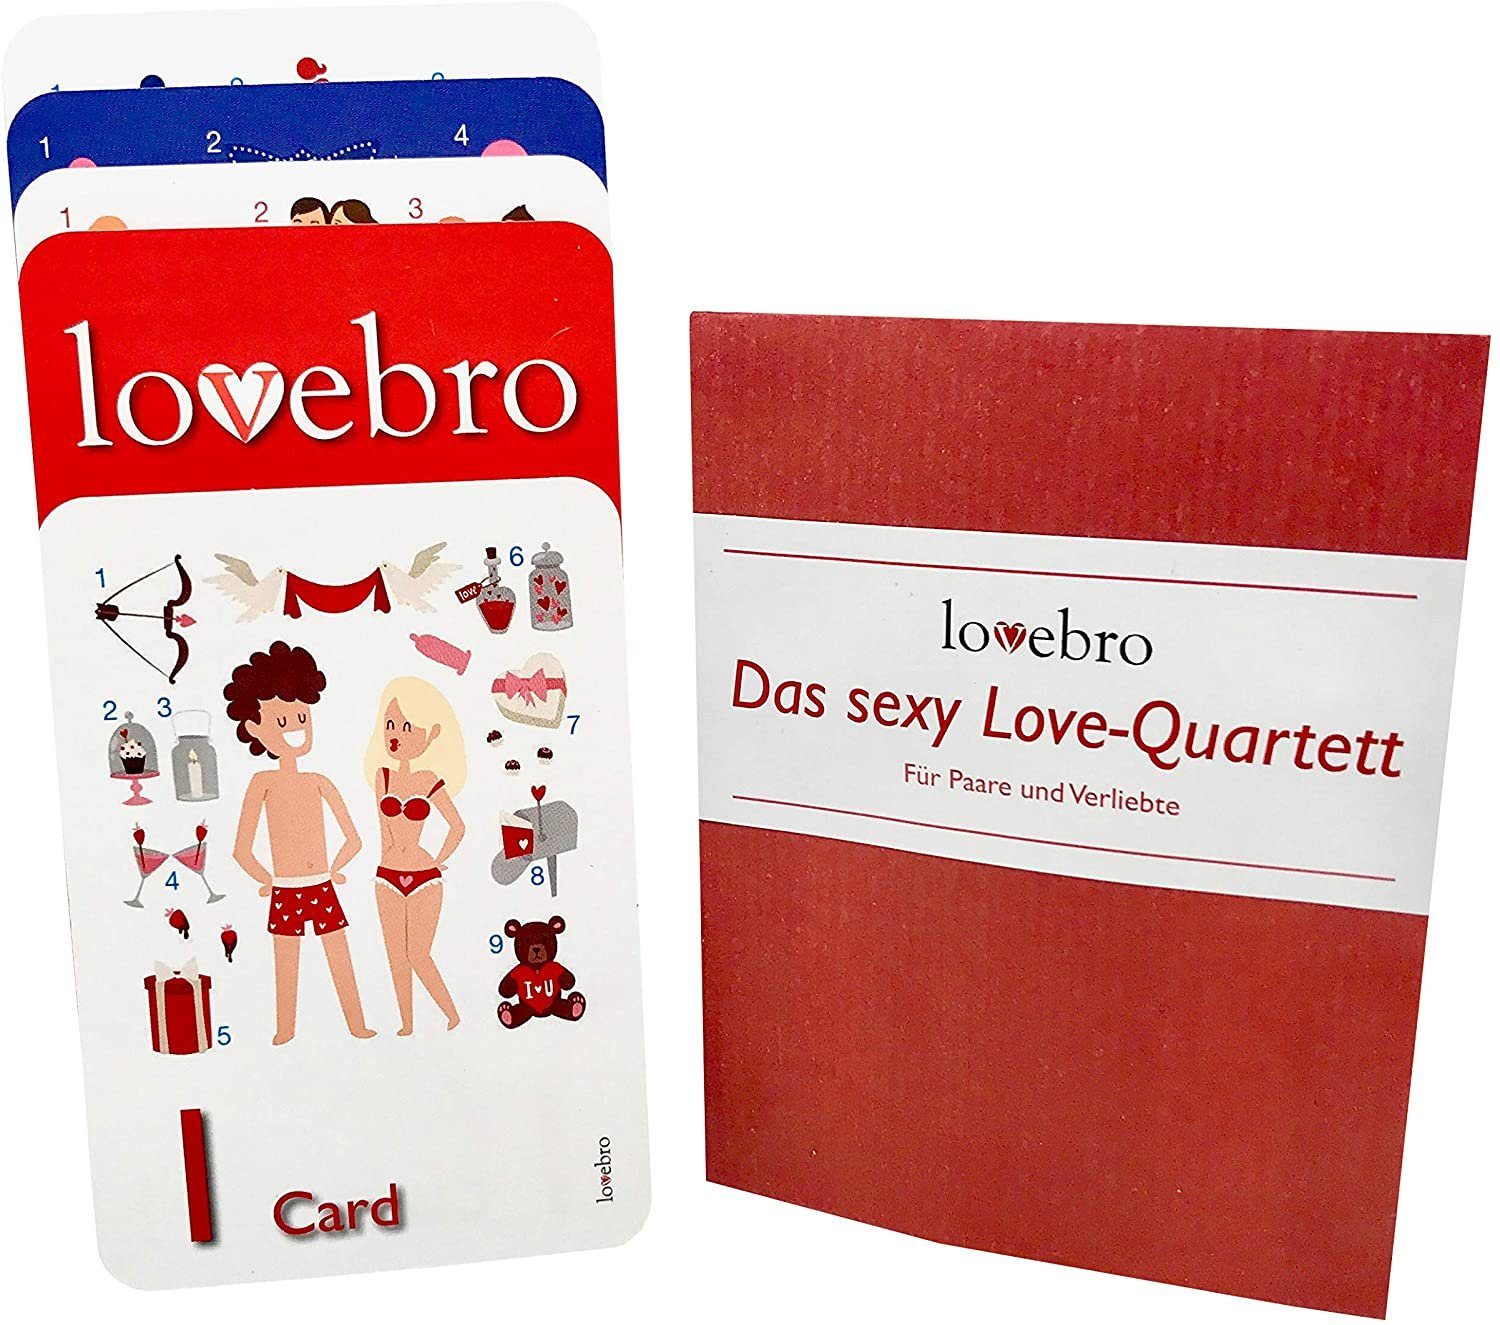 lovebro Erotik-Spiel, Das sexy Love-Quartett, Erotik Spielzeug, Liebes Spaß für Paare